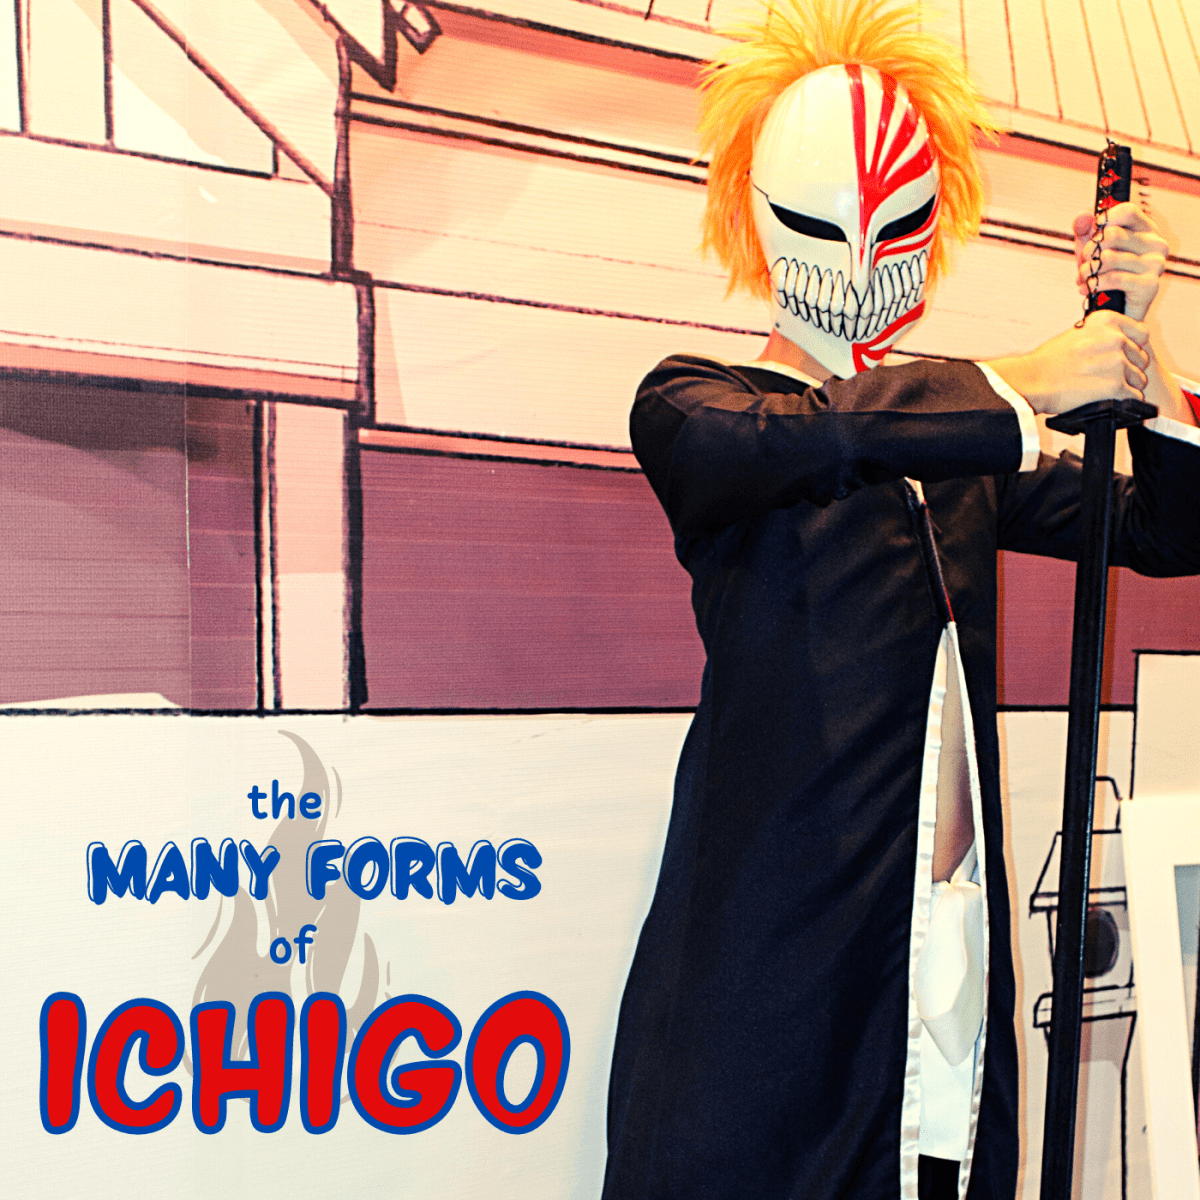 ichigo release form